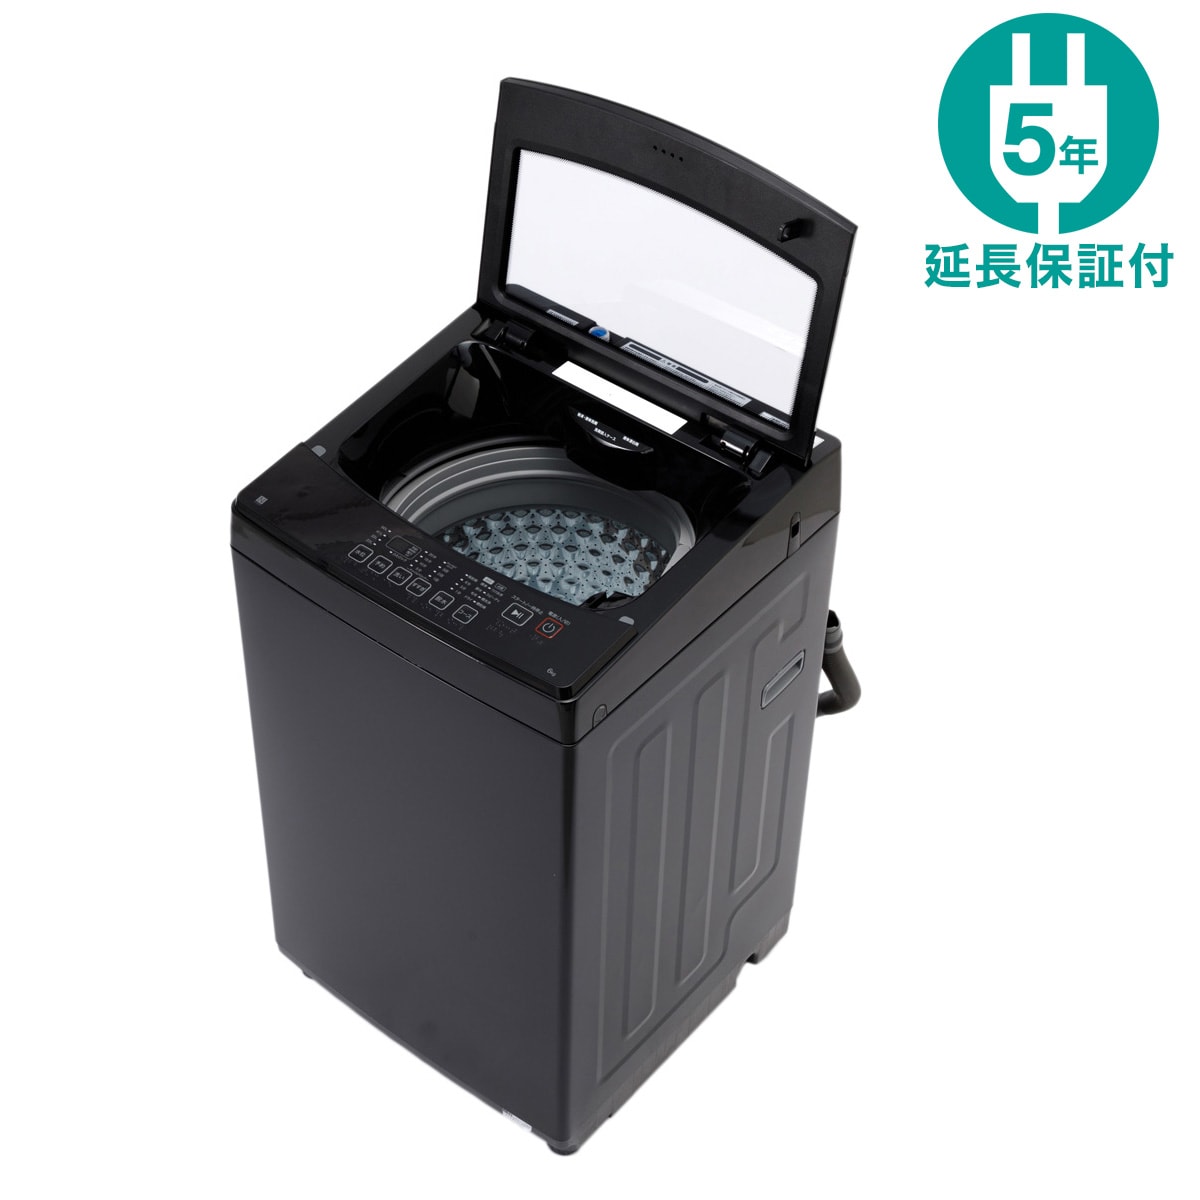 6kg全自動洗濯機(NT60L1 ブラック) 延長保証付き(リサイクル回収あり 